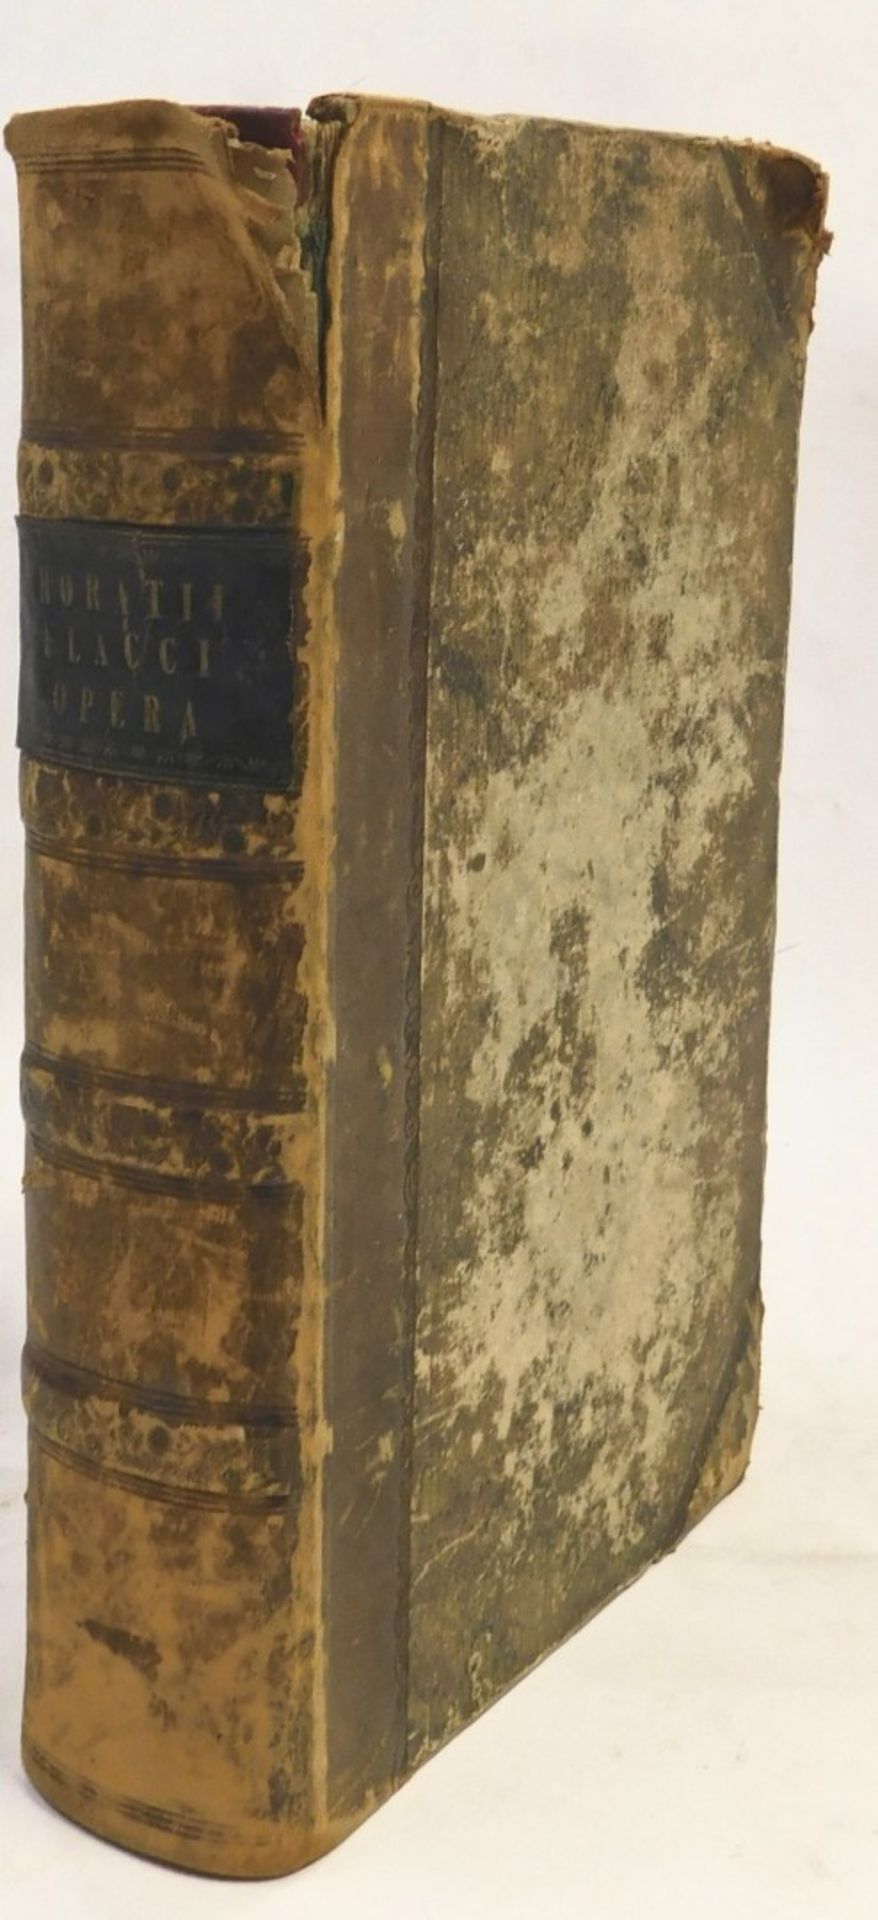 Book, Zeunius (Carolus) Q.Horath Flacci Eclogae Cum Scholiis Veteribus, London 1826, calf boards.